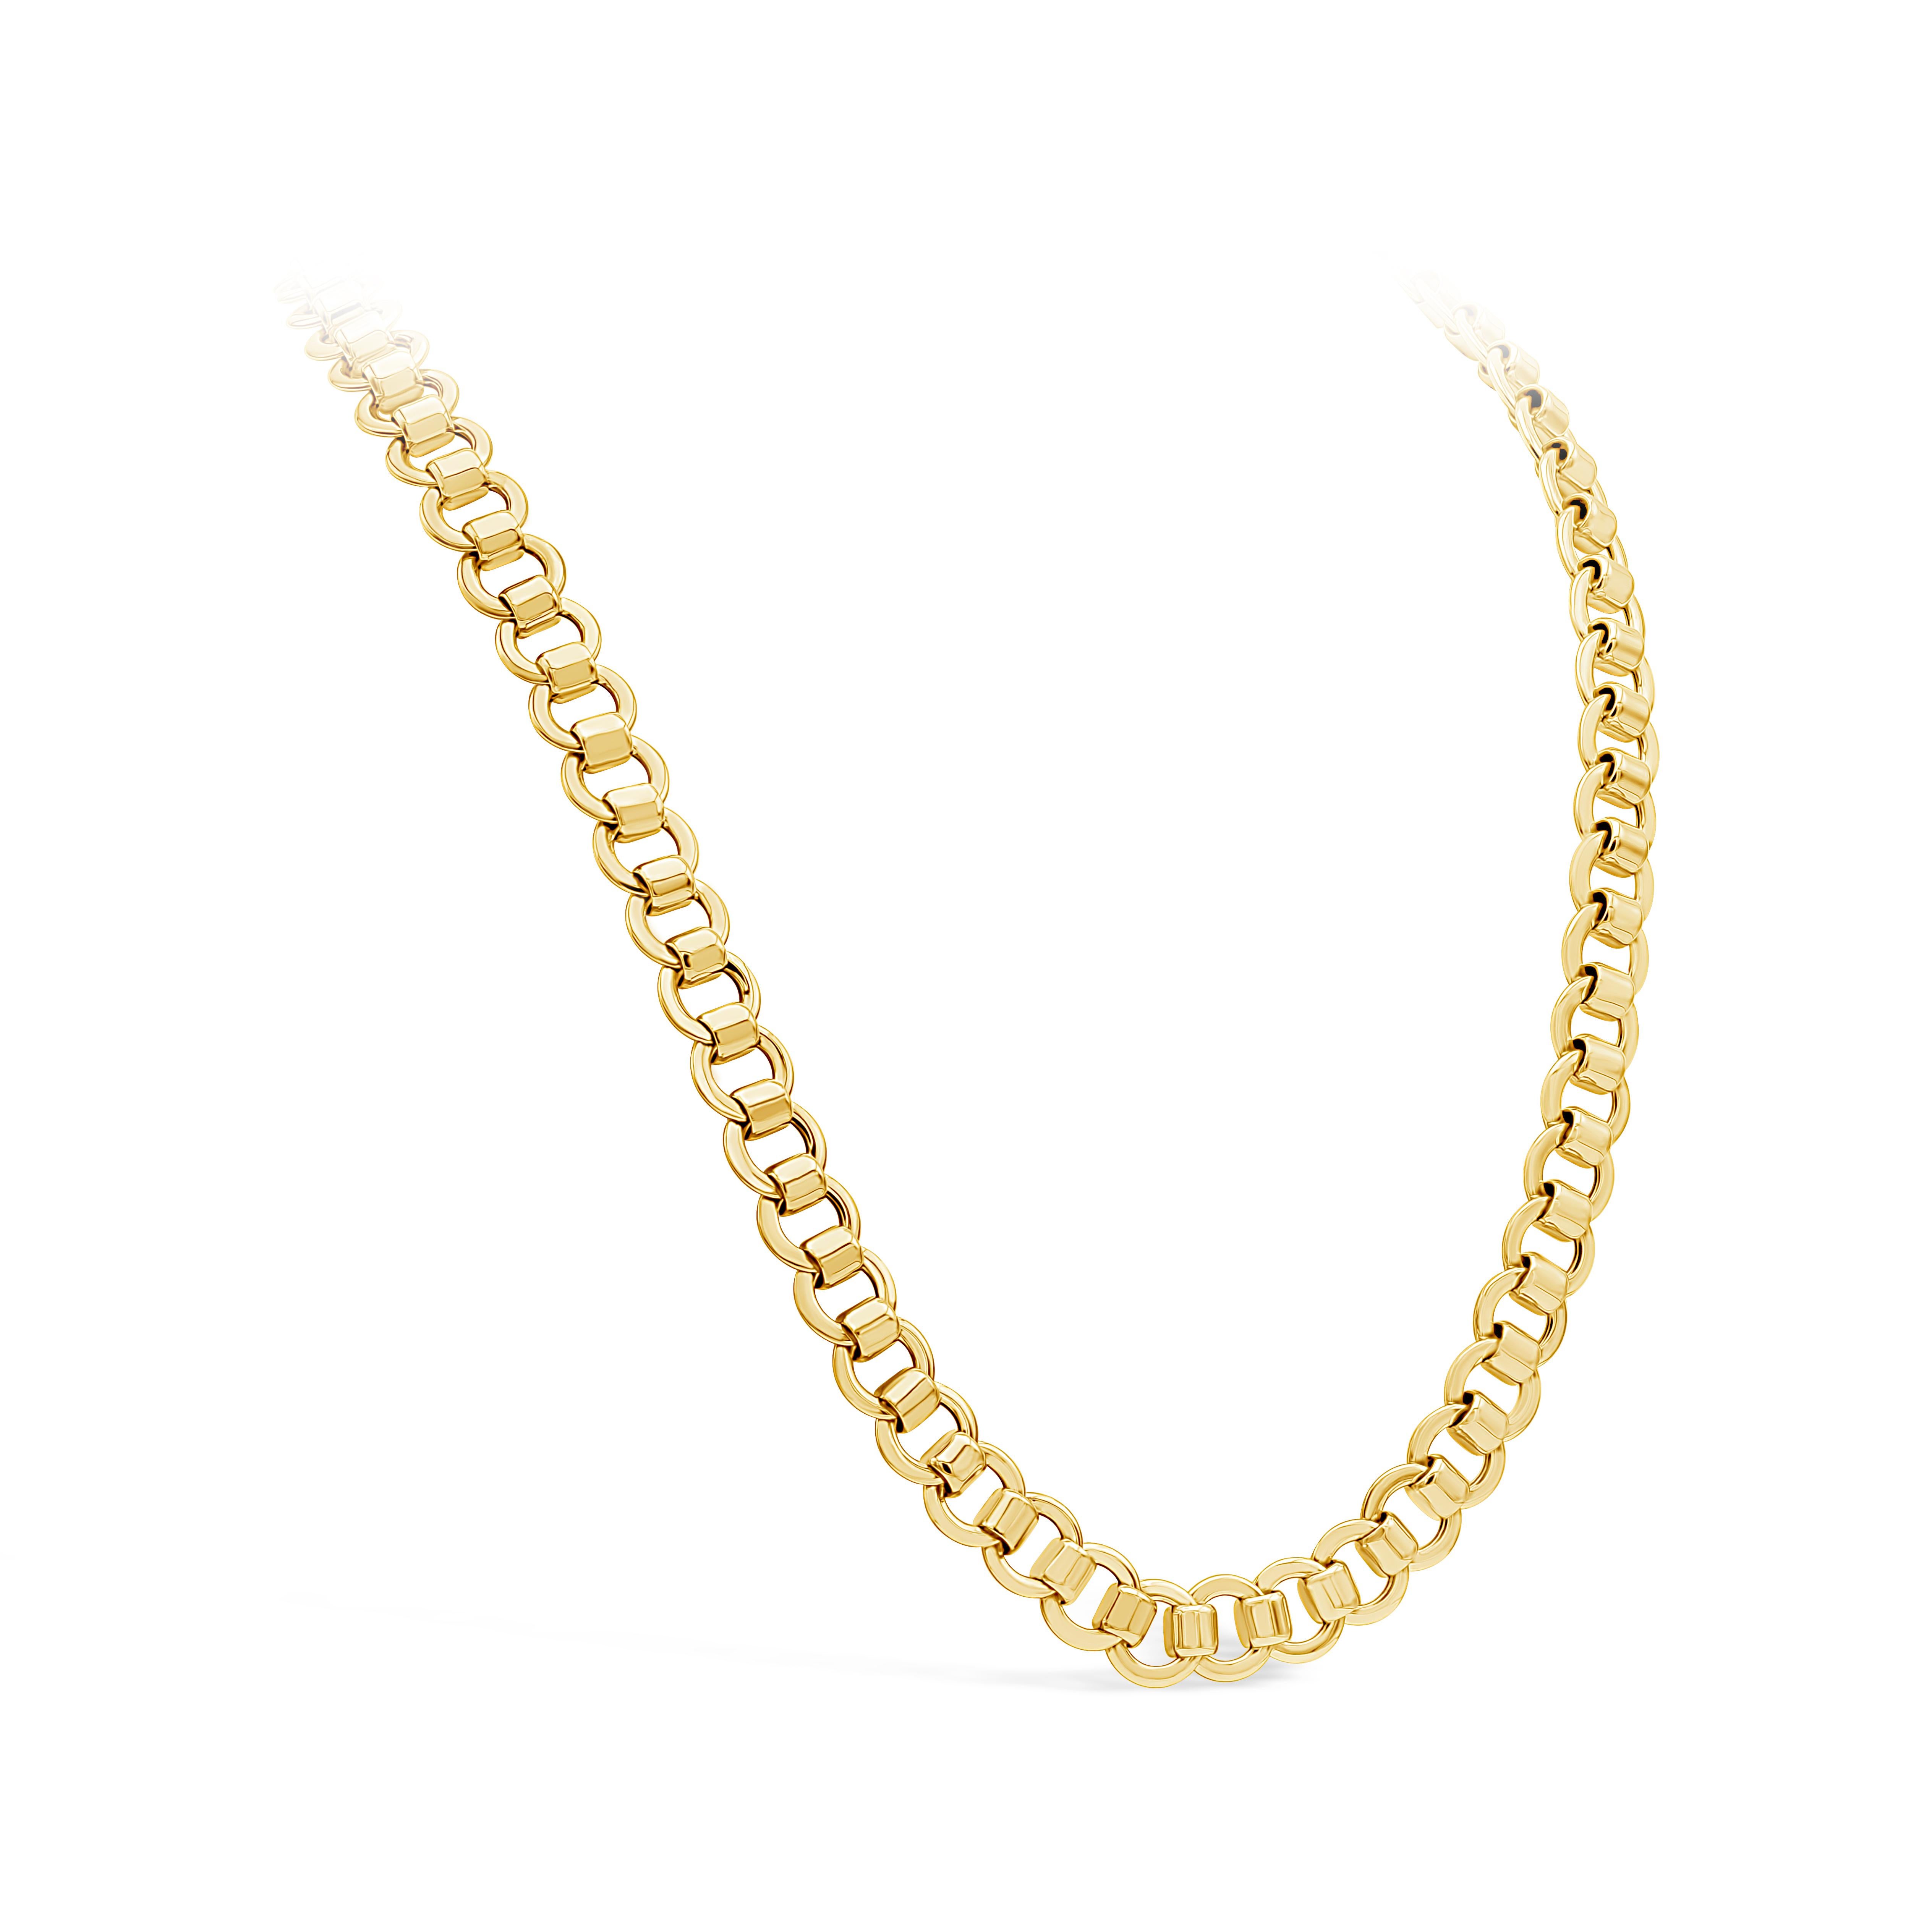 Ce collier à maillons ronds de 30 pouces au design moderniste est fabriqué en or jaune 14 carats. Environ 79 grammes

Avec bracelet assorti, veuillez consulter notre inventaire et nous contacter pour plus d'informations.